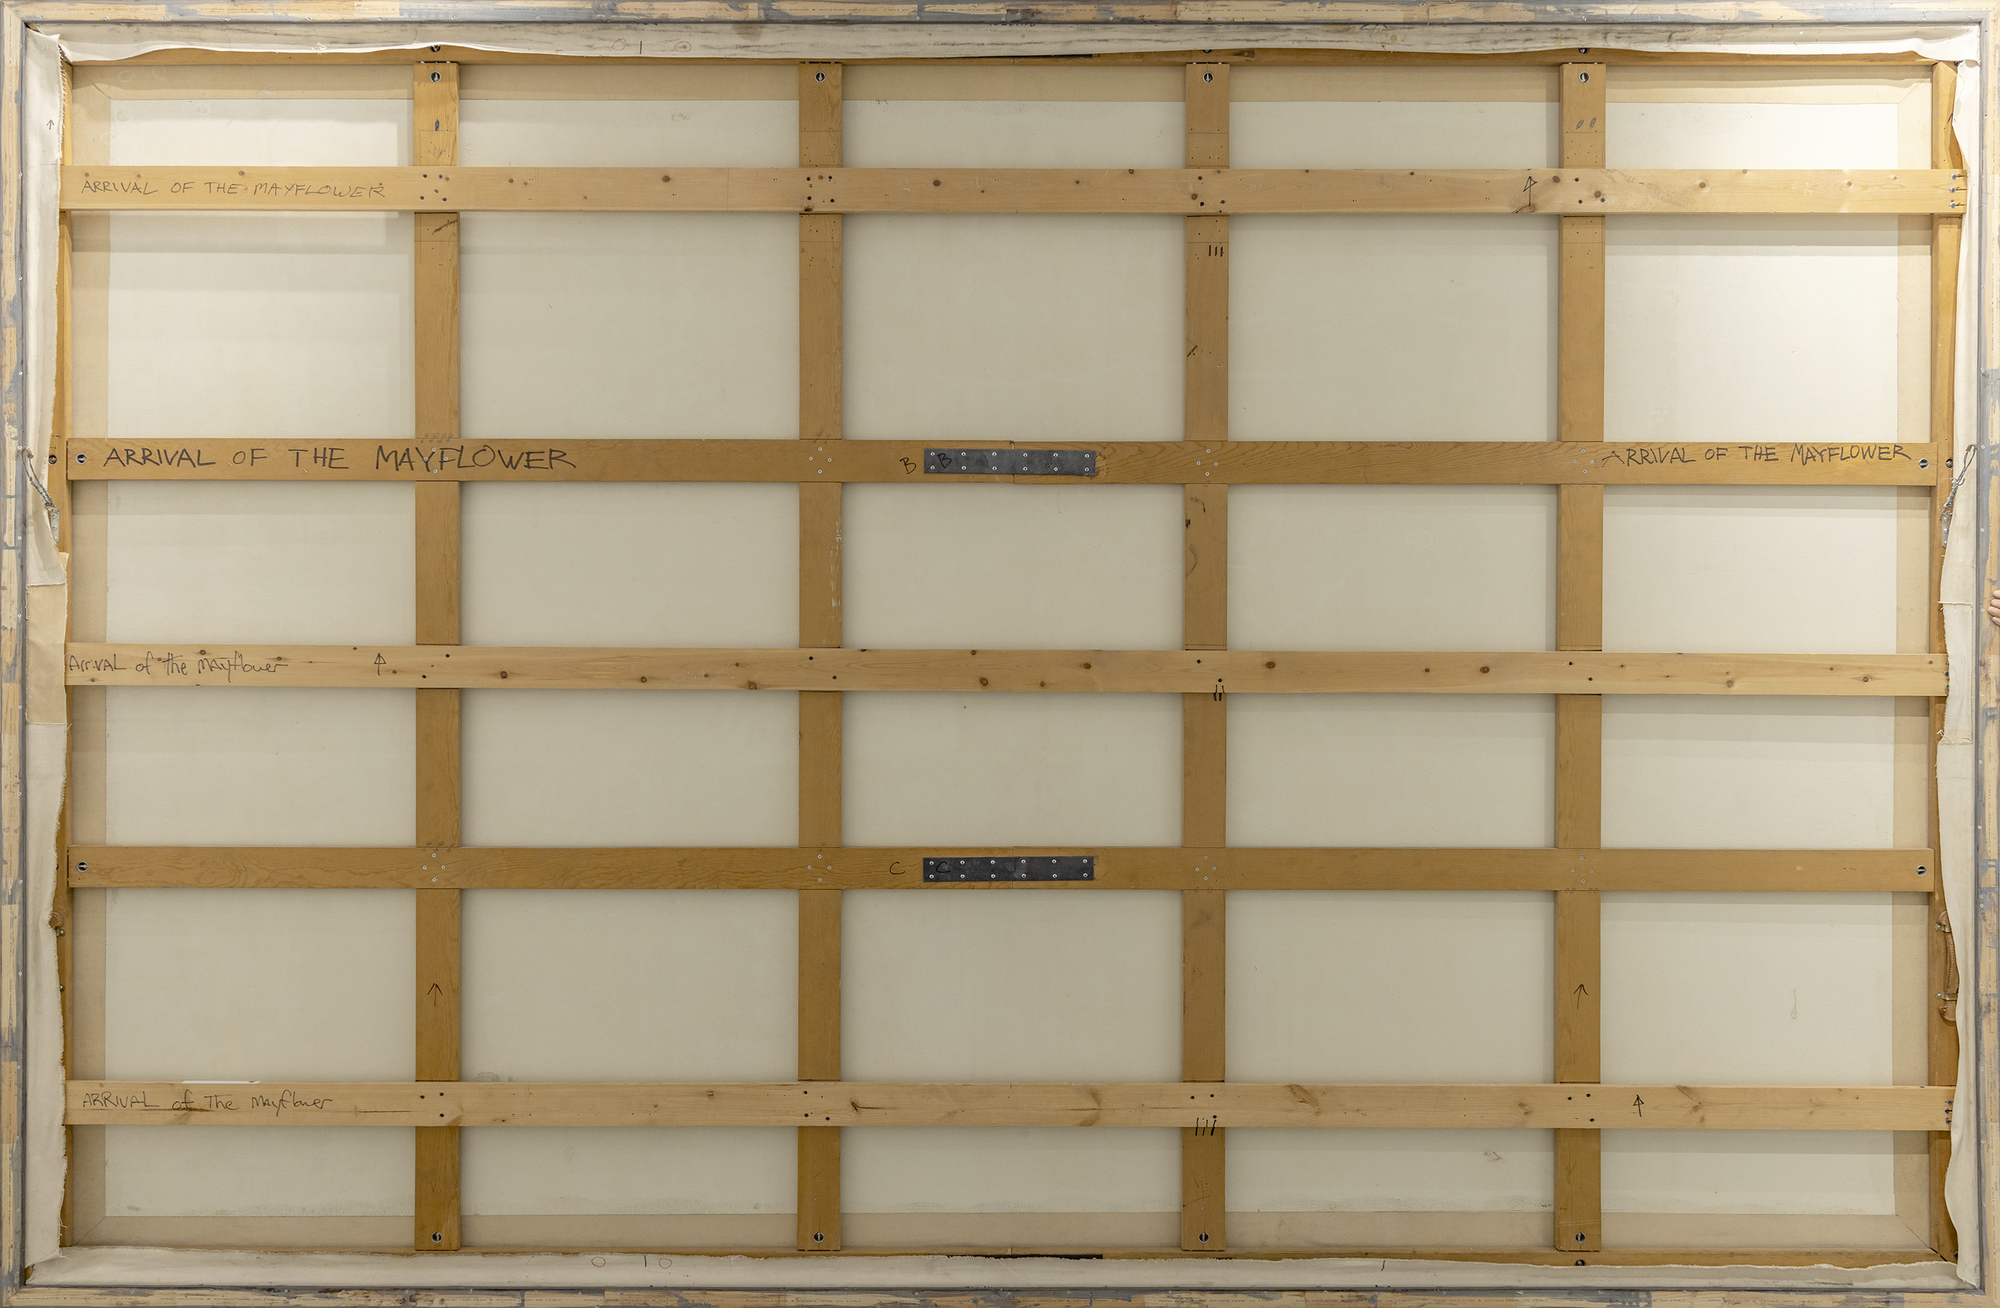 N.C. WYETH - 1620年のメイフラワー号の来航 - 油彩・キャンバス - 104 1/2 x 158 3/4 in.